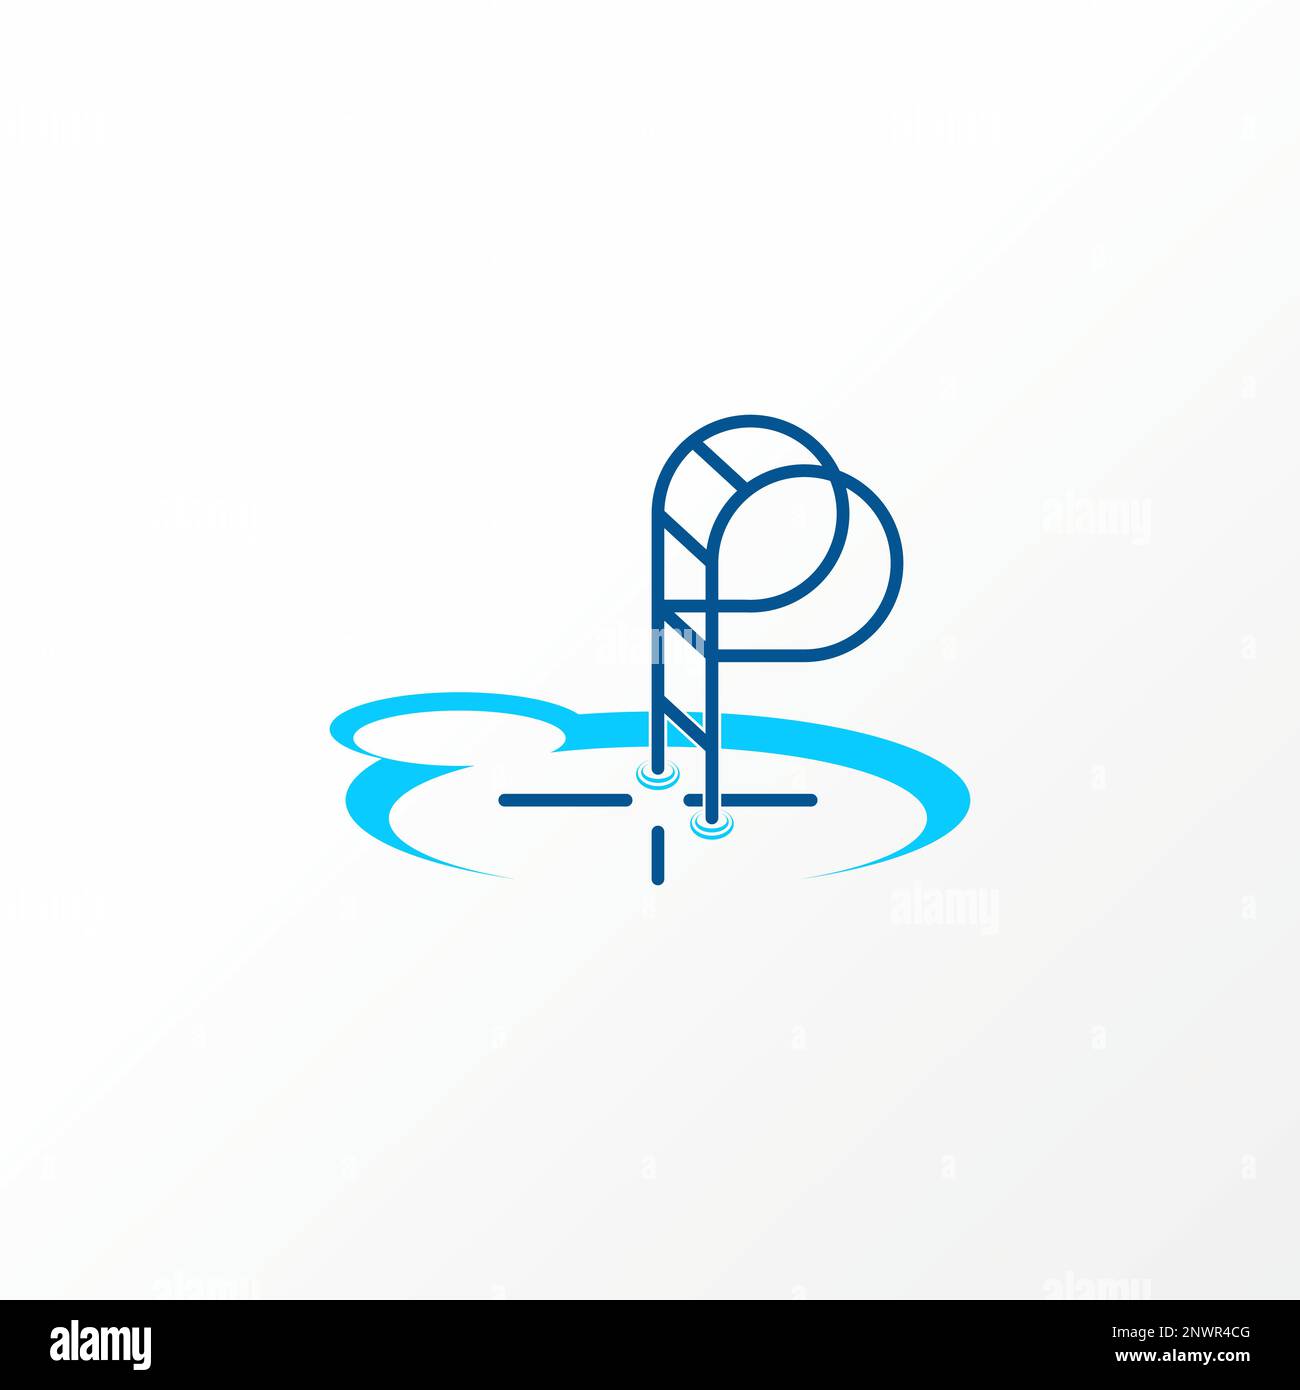 Piscina semplice e unica con acqua, scale, punto di riferimento su 3D immagine grafica icona logo design astratto concetto vettoriale stock ricreazione relax Illustrazione Vettoriale